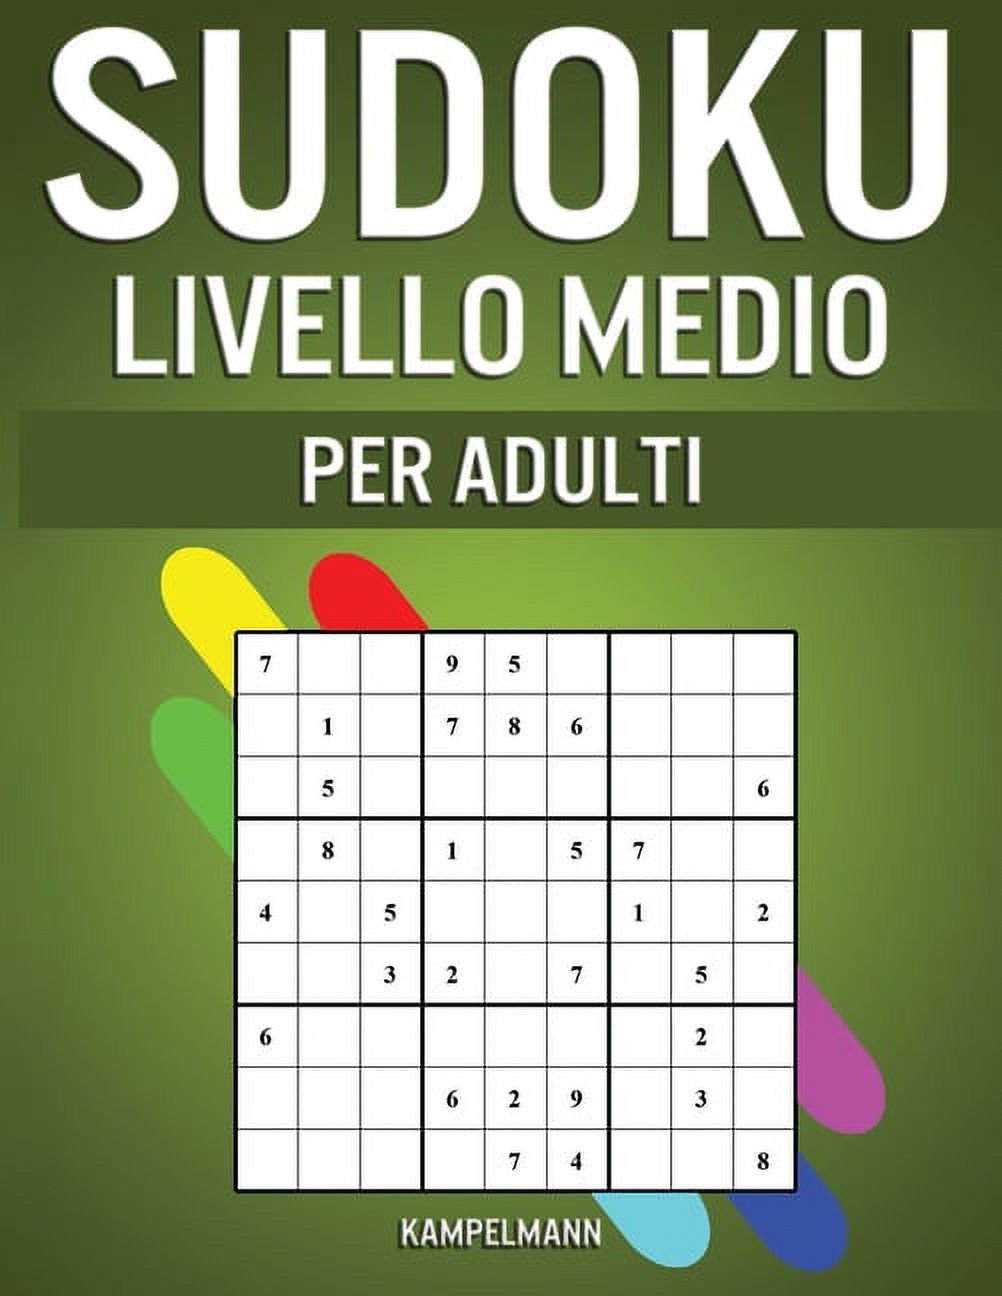 Sudoku Livello Medio per Adulti: 400 Sudoku Livello Intermedio per